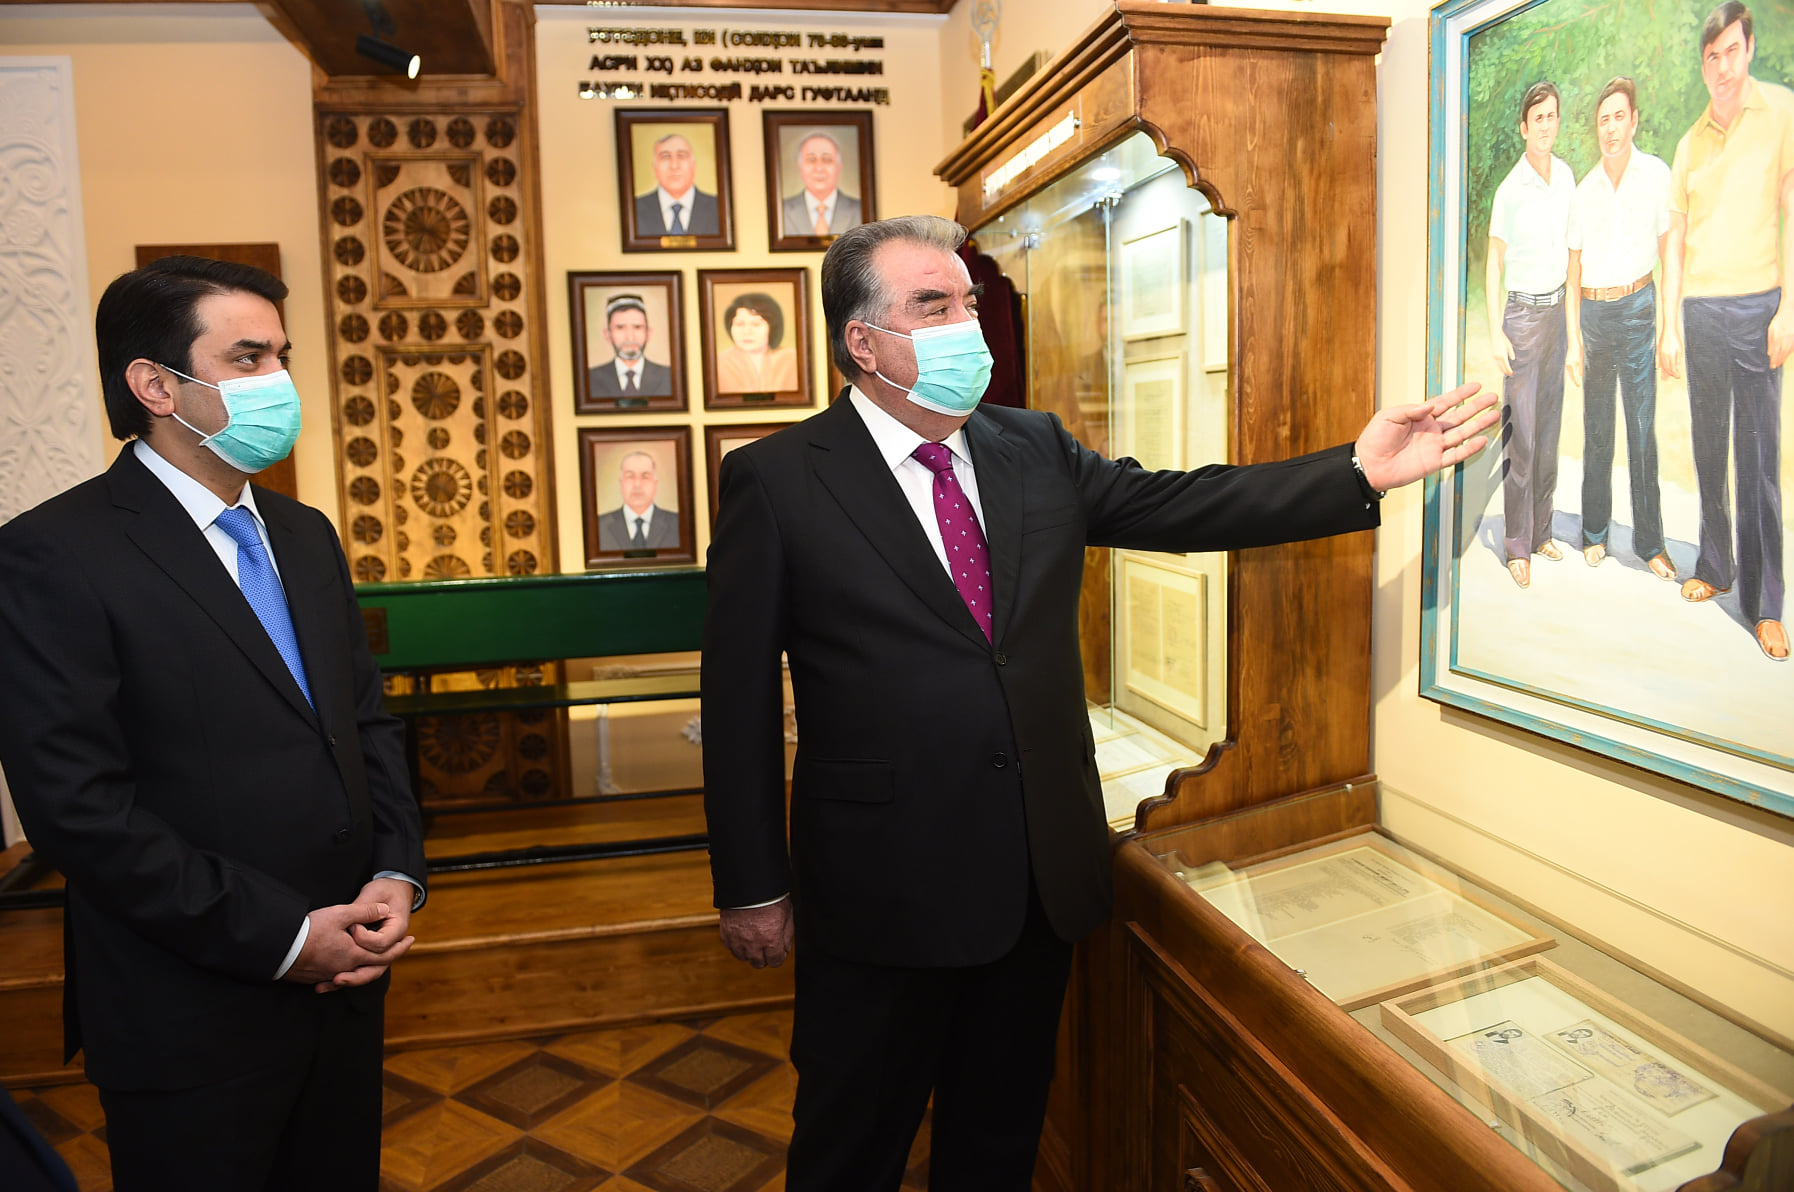 В Таджикистане открылся музей, посвященный Эмомали Рахмону